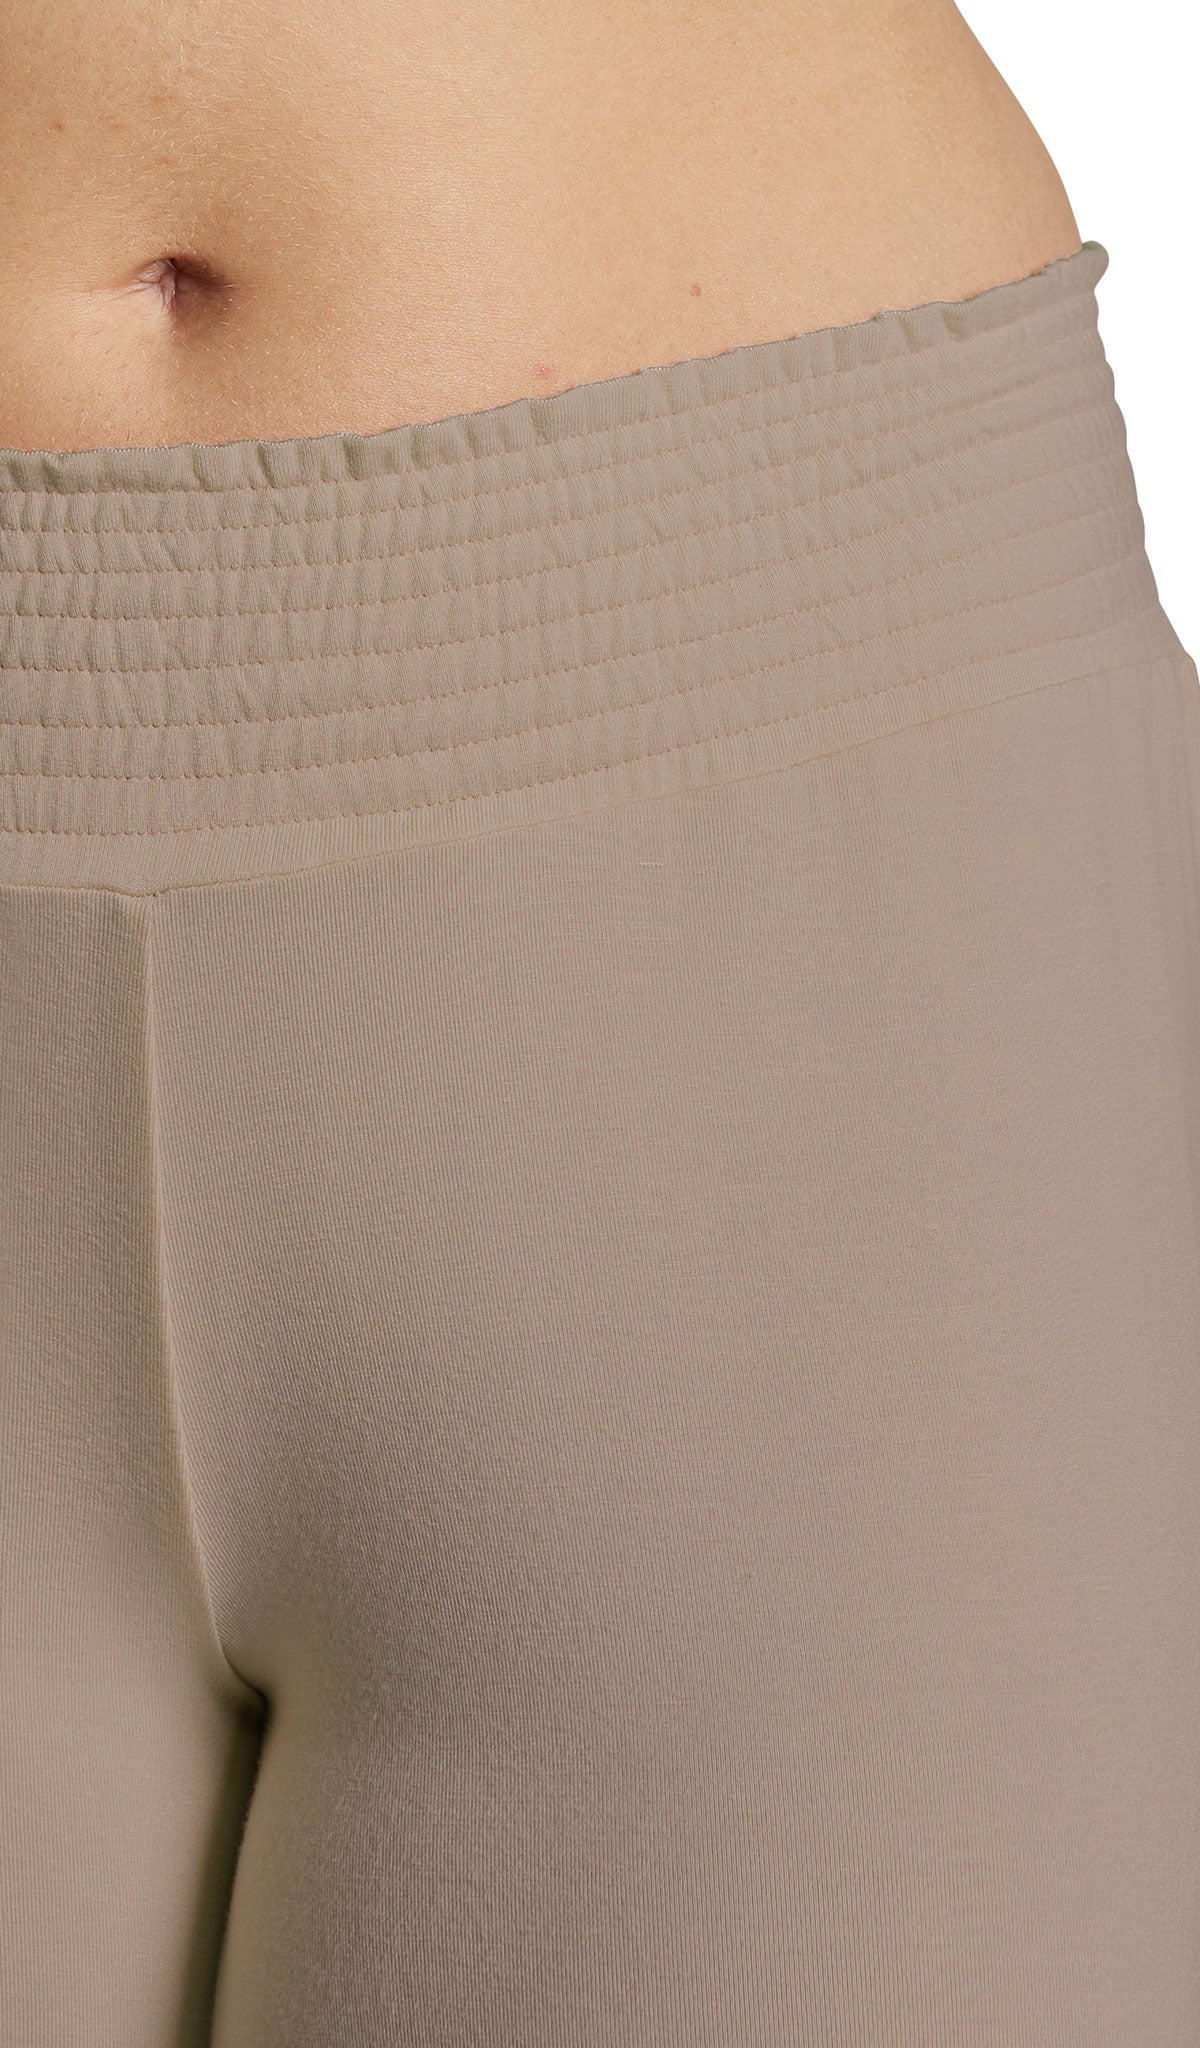 Latte Analise 3-Piece Set, detailed shot of smocked elastic waistband.